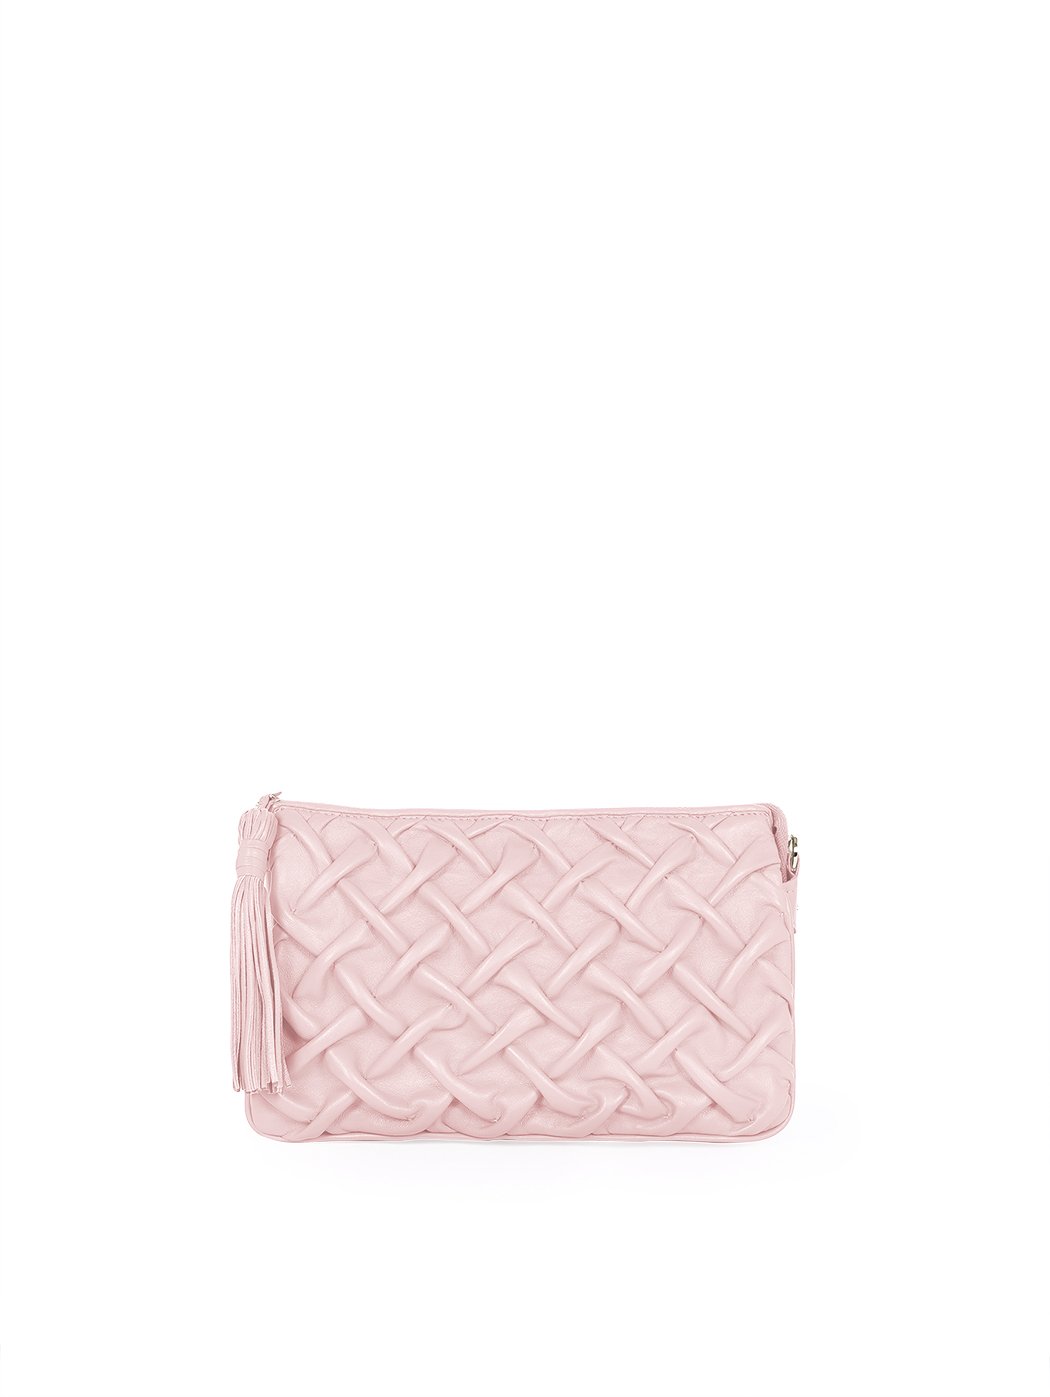 Плиссированная женская сумочка – клатч коллекции Poseidon розового цвета